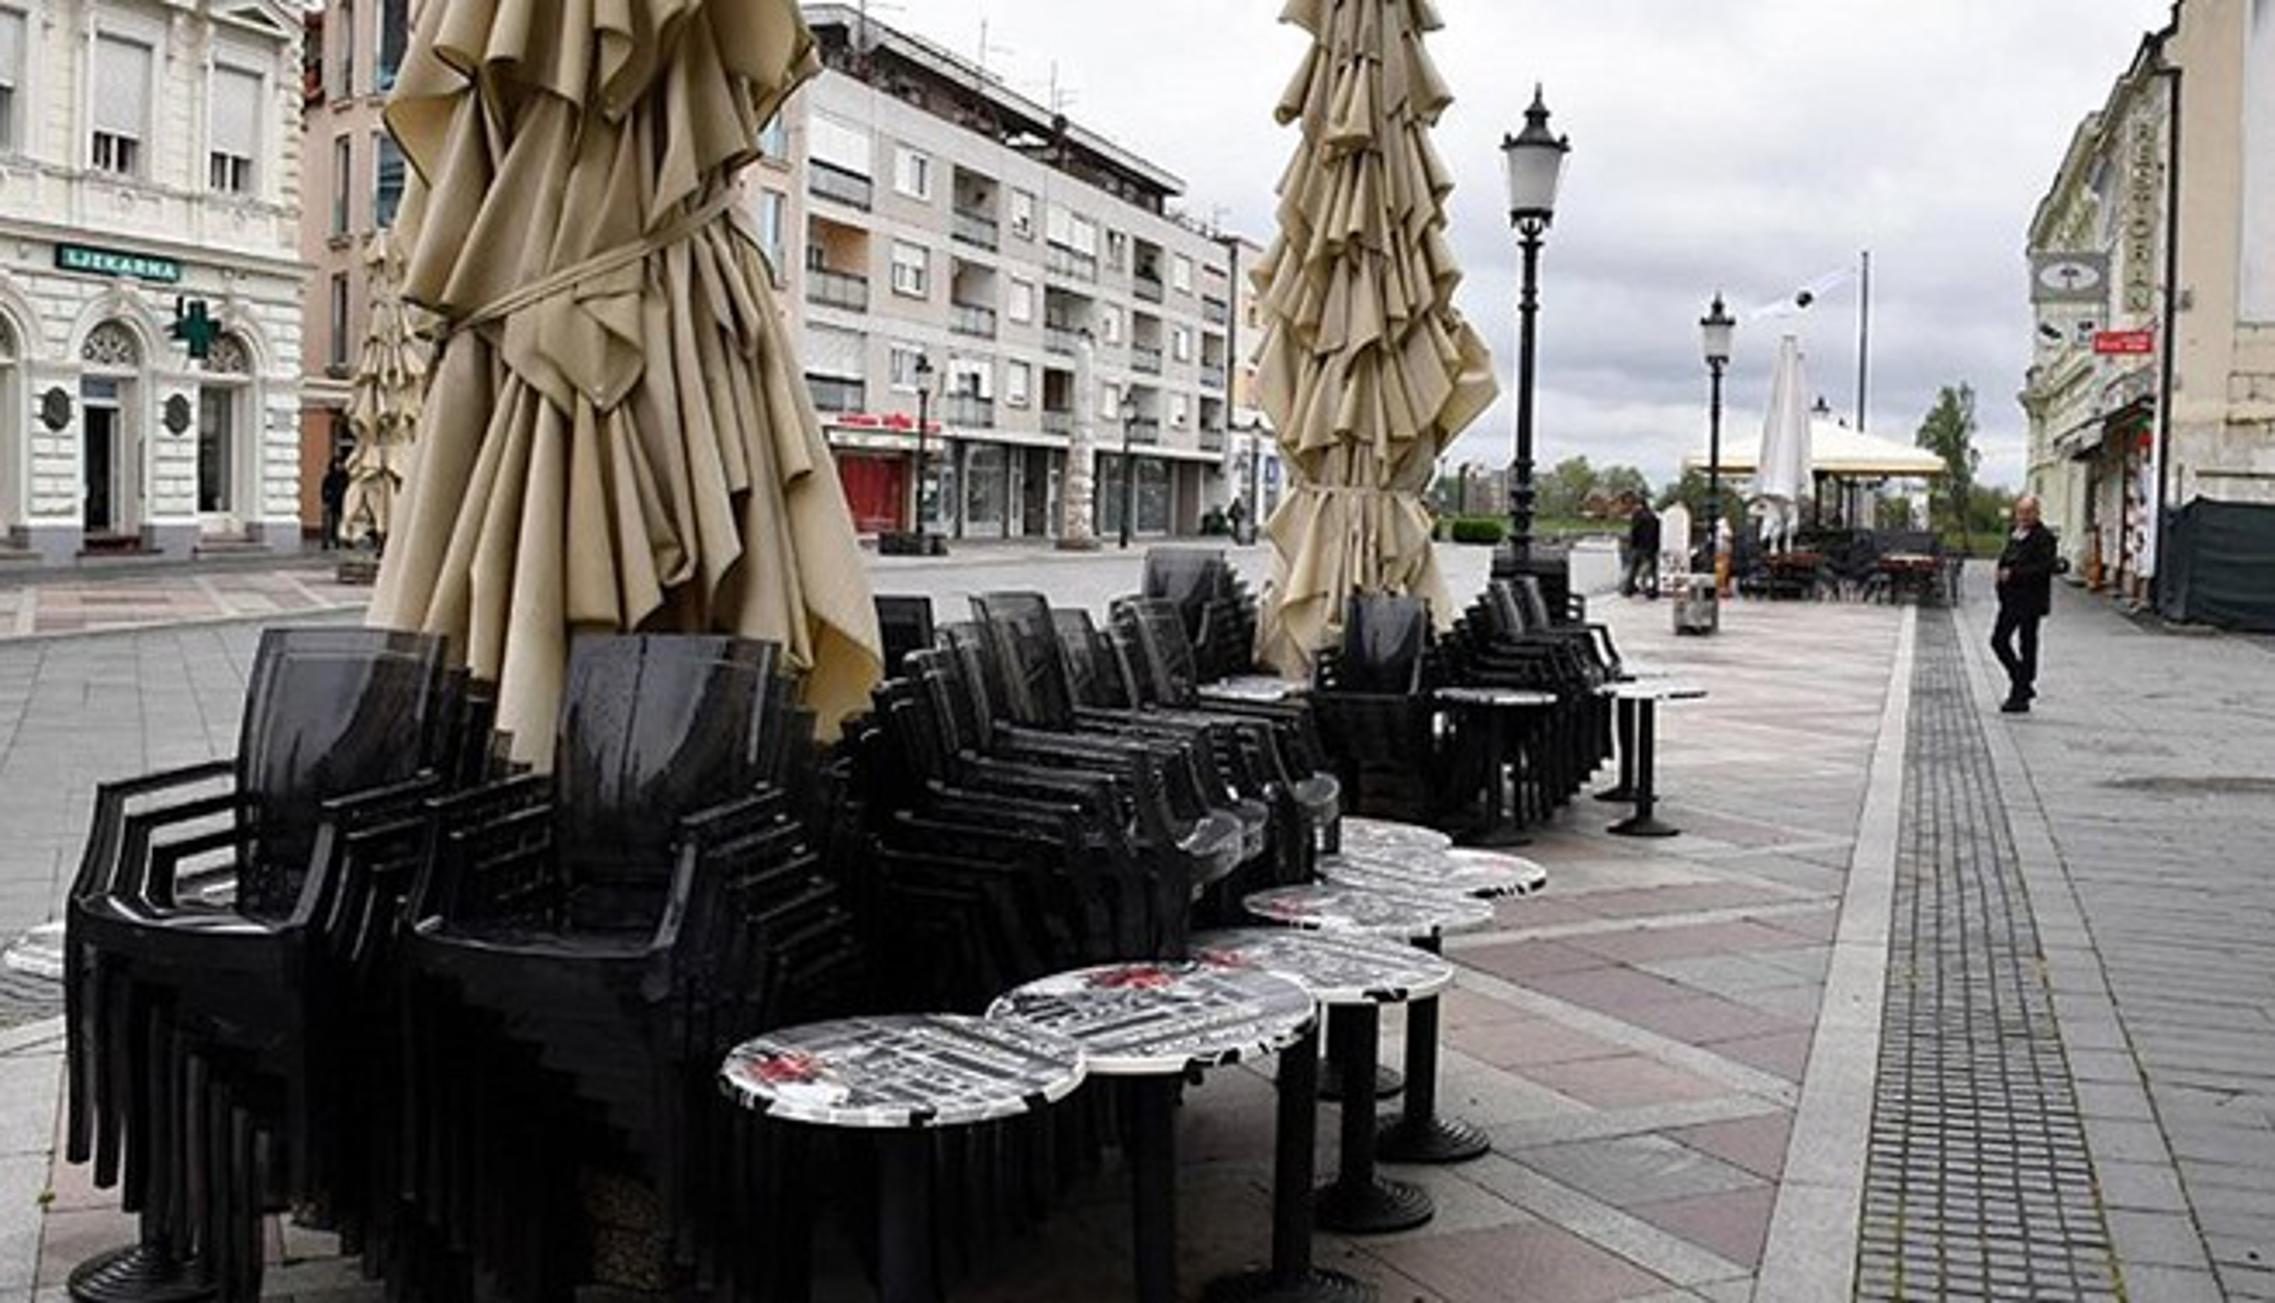 Fotografija Slavonskog Broda korištena u članku o istarskim kafićima